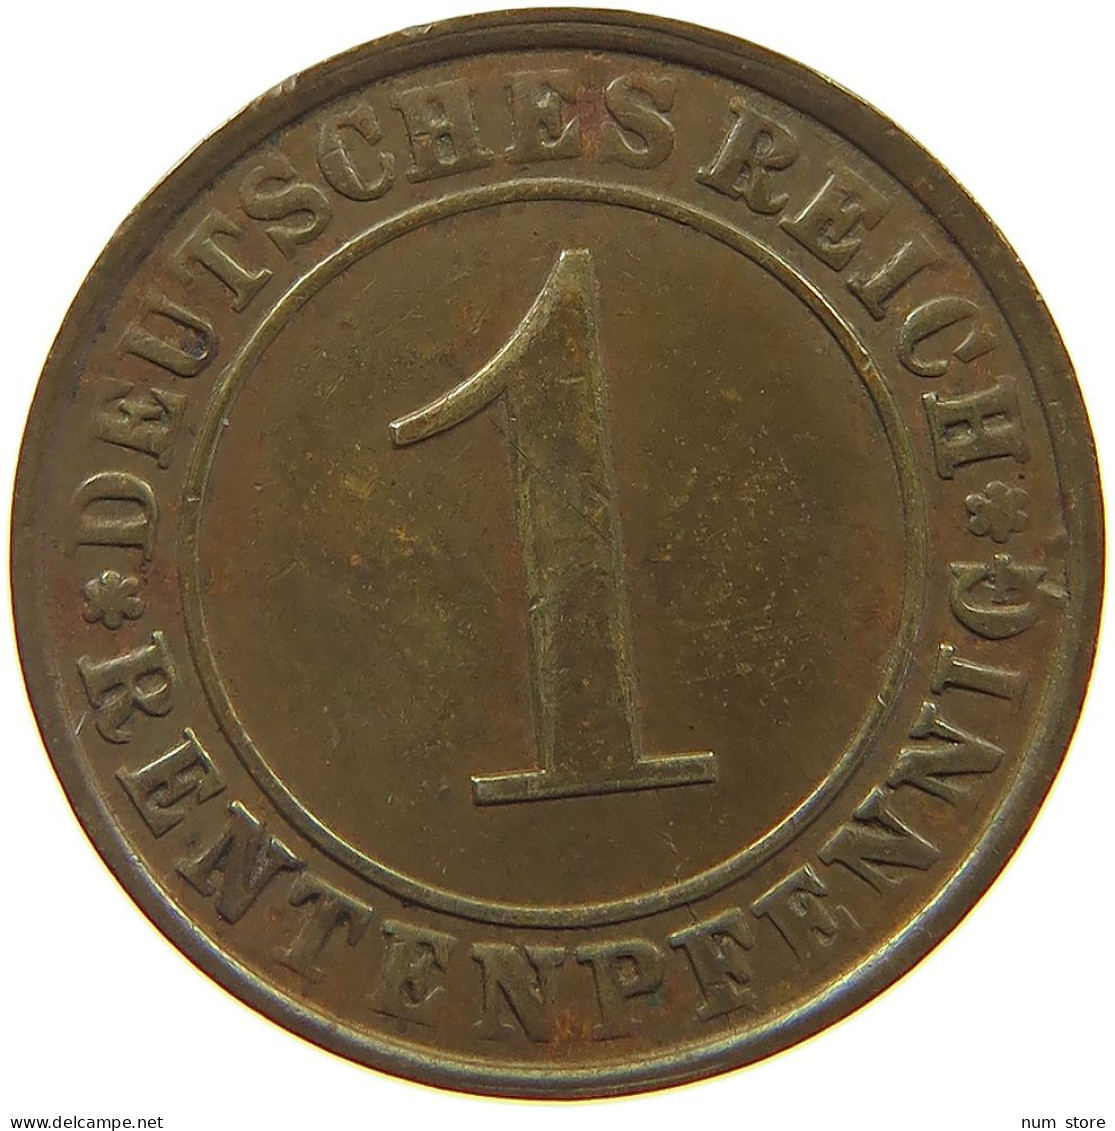 WEIMARER REPUBLIK PFENNIG 1923 G  #a076 0199 - 1 Renten- & 1 Reichspfennig